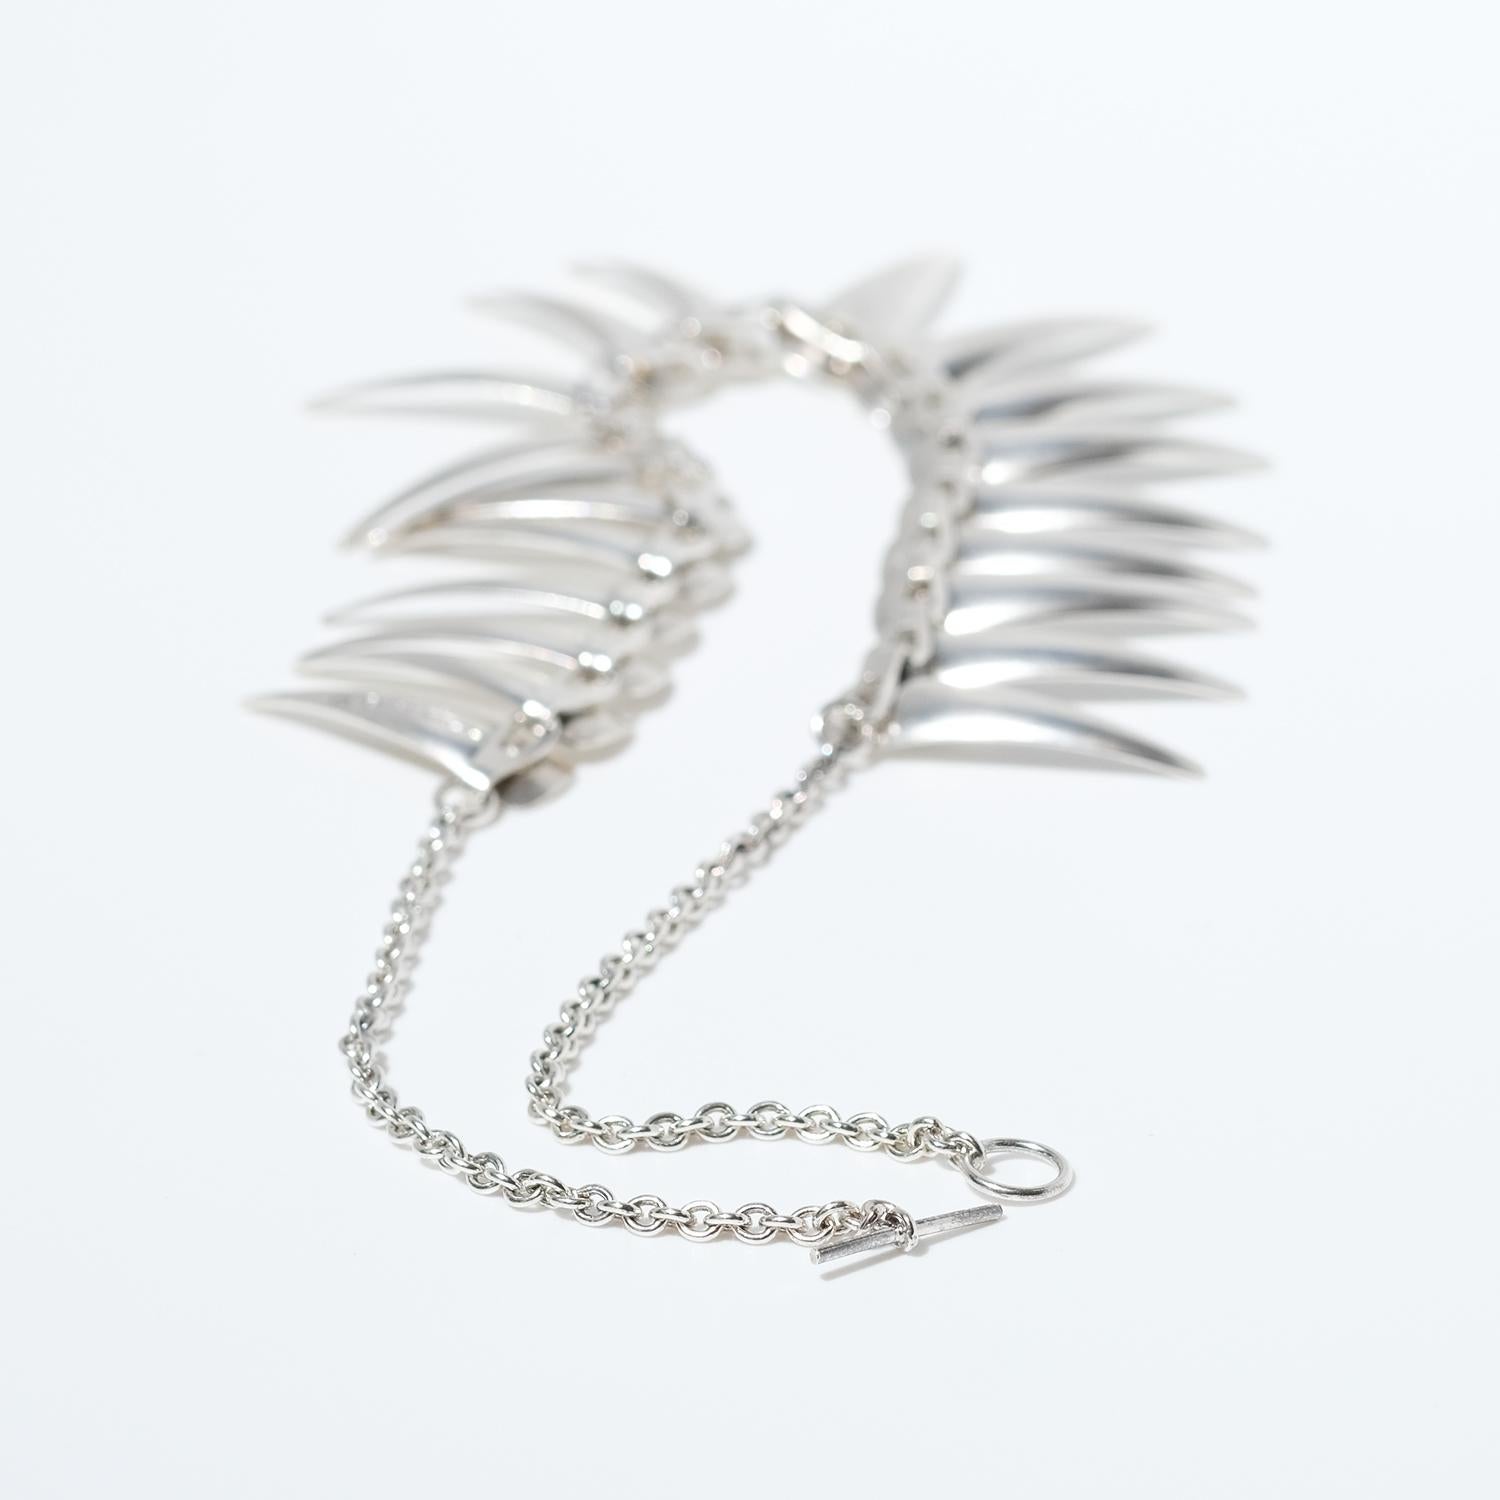 Diese Halskette aus Sterlingsilber ist mit 20 leicht gebürsteten Silberanhängern in Form von Haifischzähnen geschmückt. Es lässt sich leicht mit einem Kreis und einem Riegel schließen. Die Halskette ist ein so genanntes Choker, also eine Kette, die